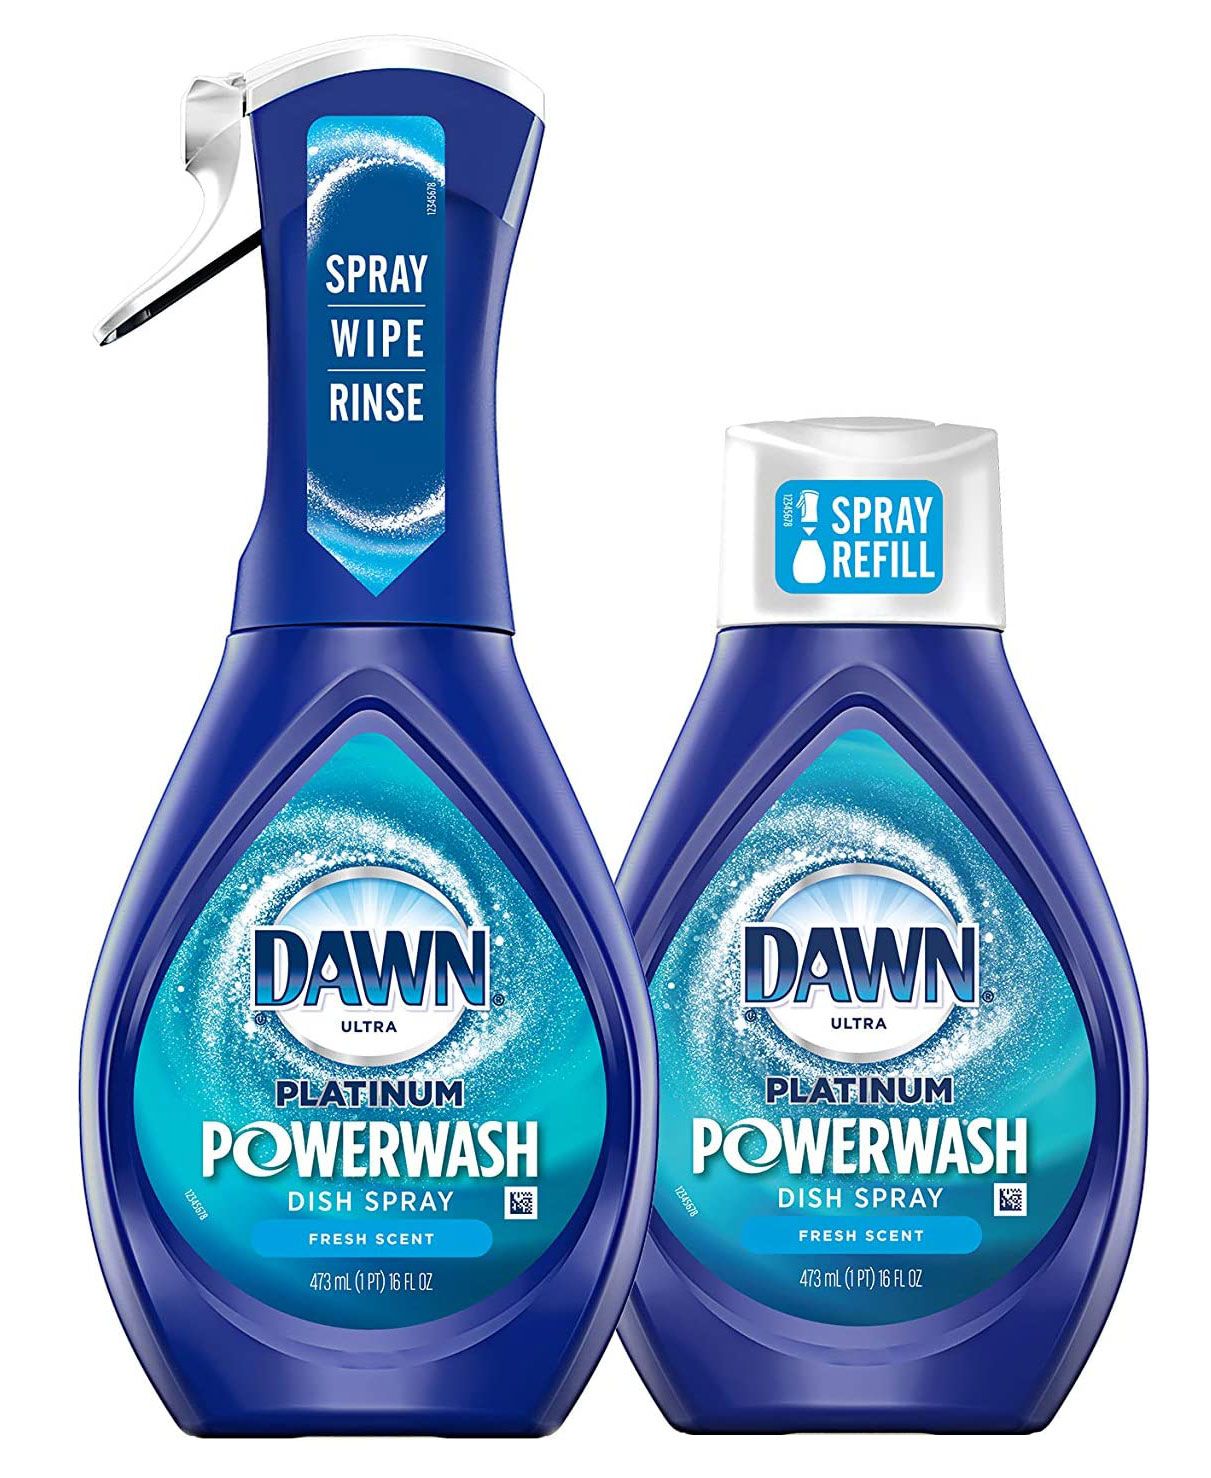 Cleverest Items 2020 - Dawn Platinum Powerwash